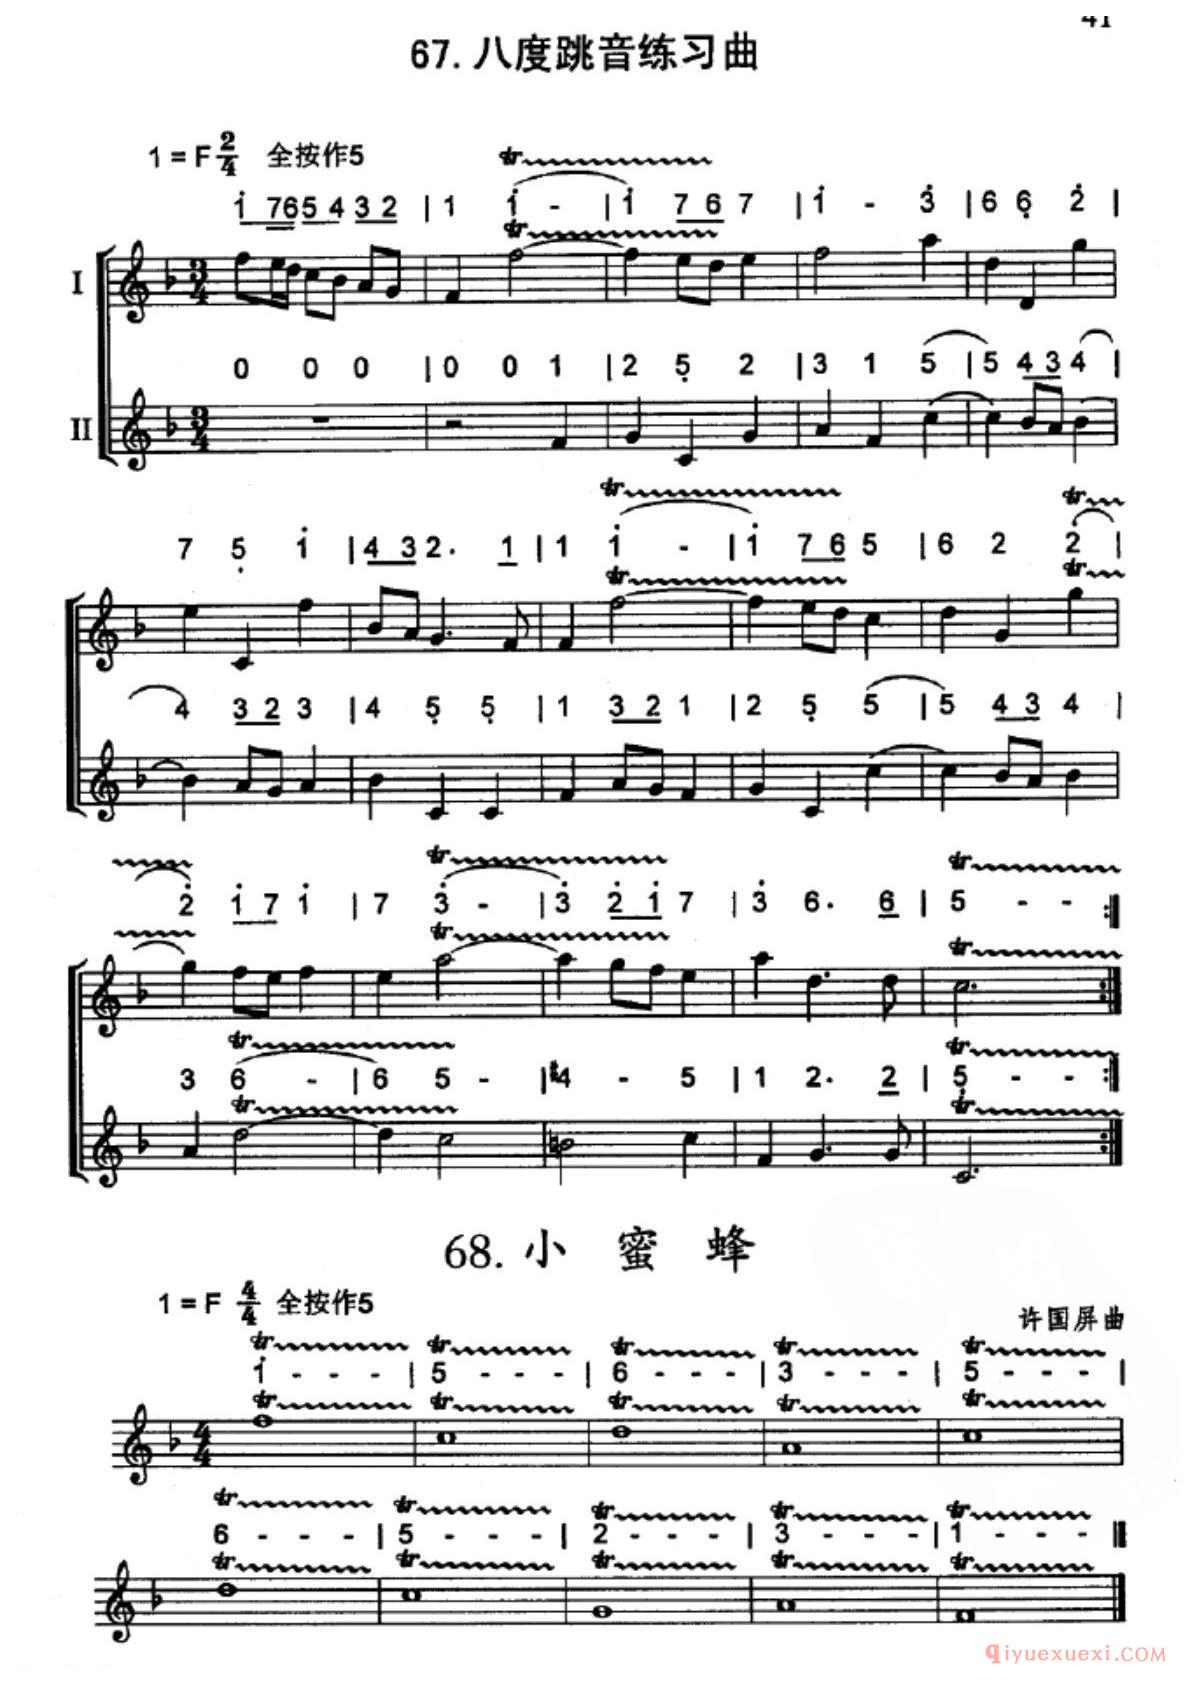 竖笛八度跳音练习曲_五线谱与简谱对照